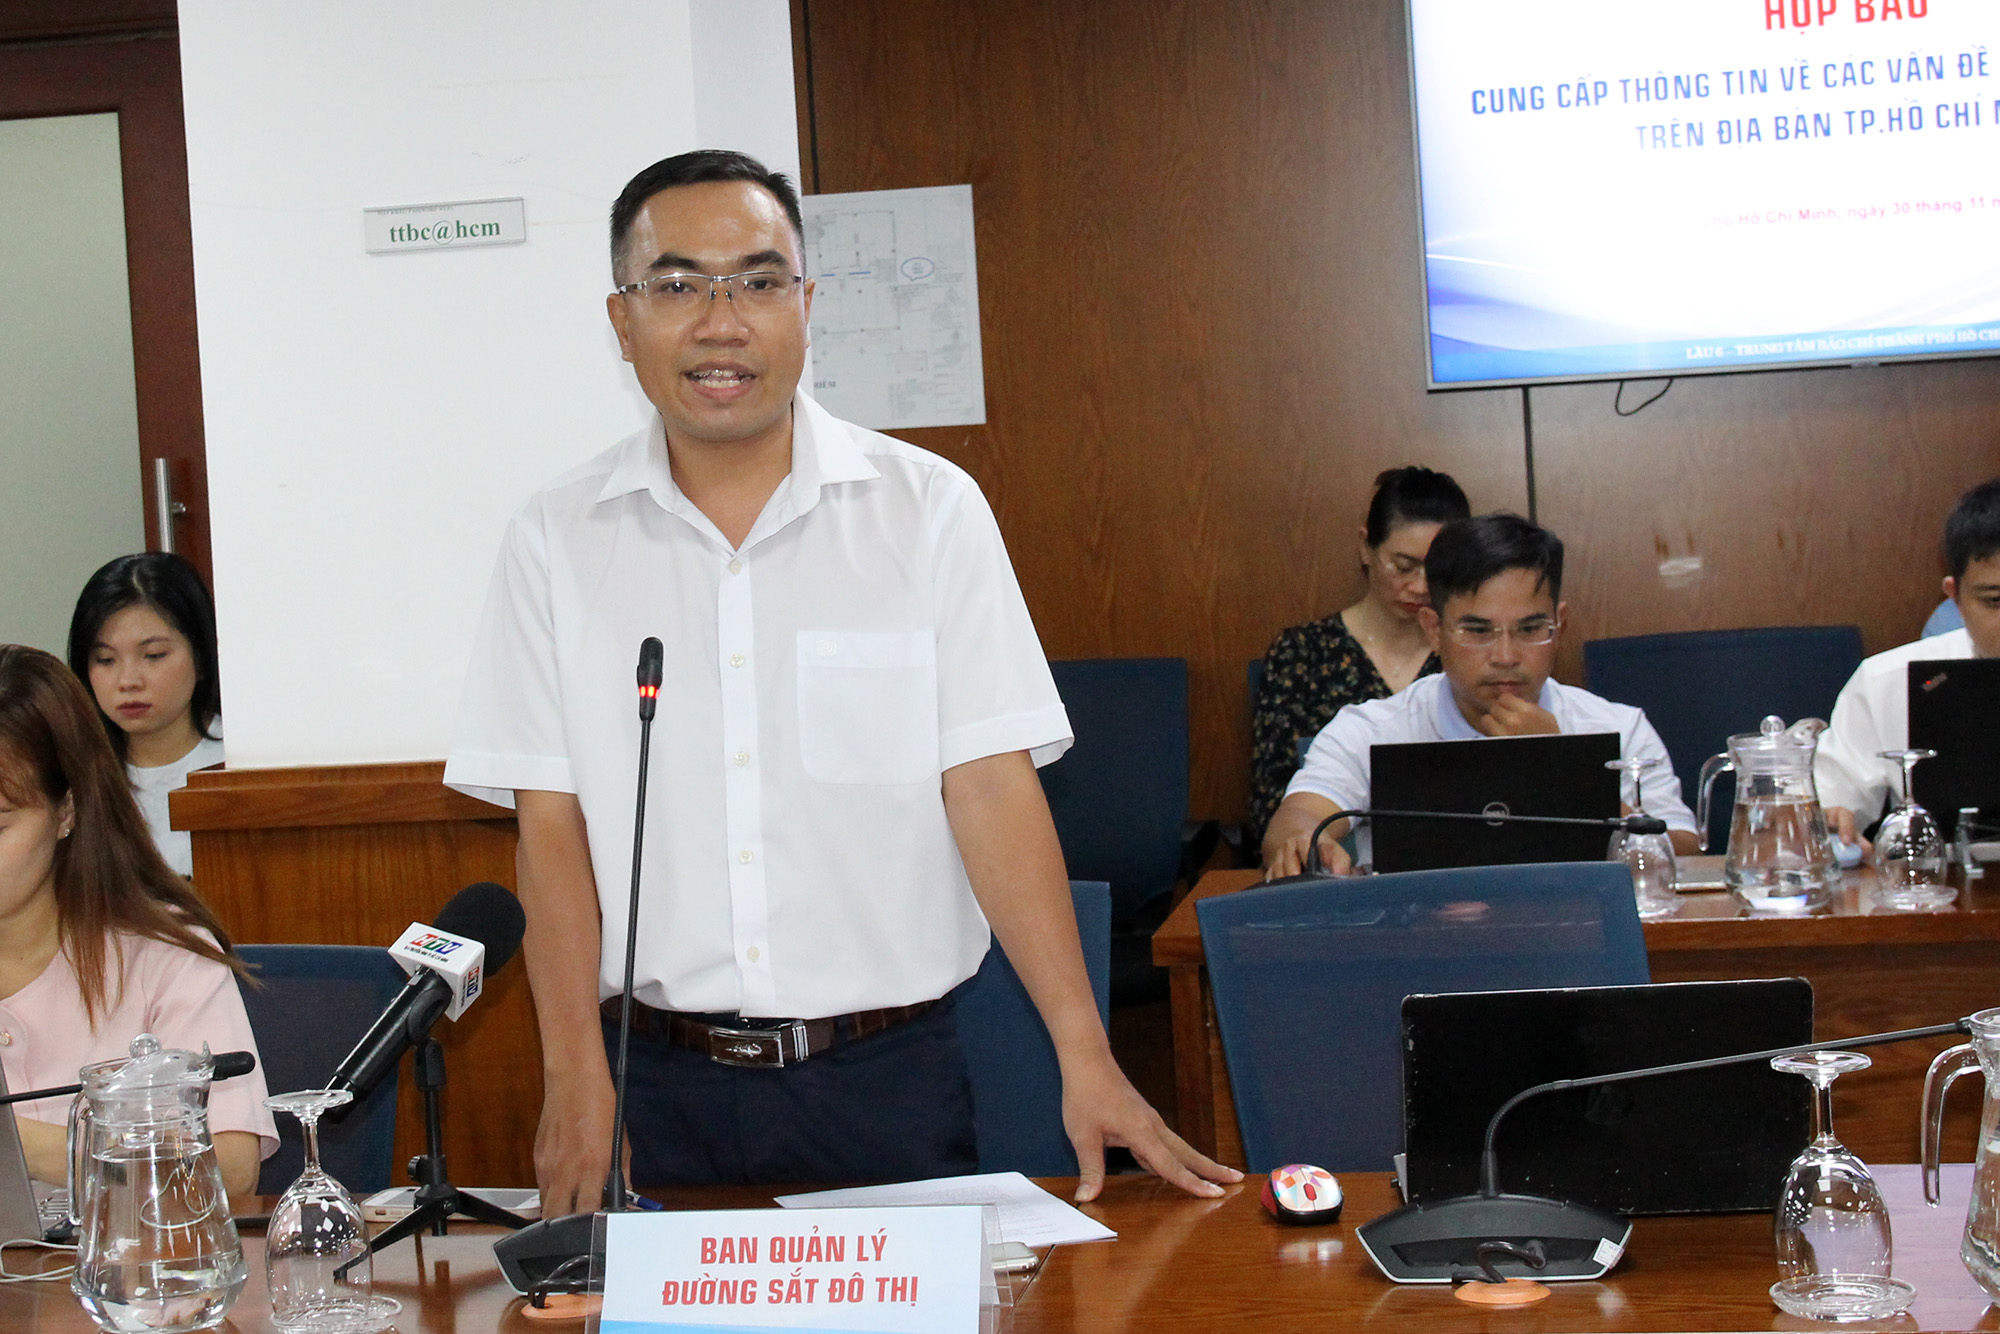 Đồng chí Hoàng Mai Tùng, Phó Giám đốc Thường trực Ban Quản lý dự án 1, Ban Quản lý Đường sắt đô thị phát biểu tại buổi họp báo (Ảnh: H.H).